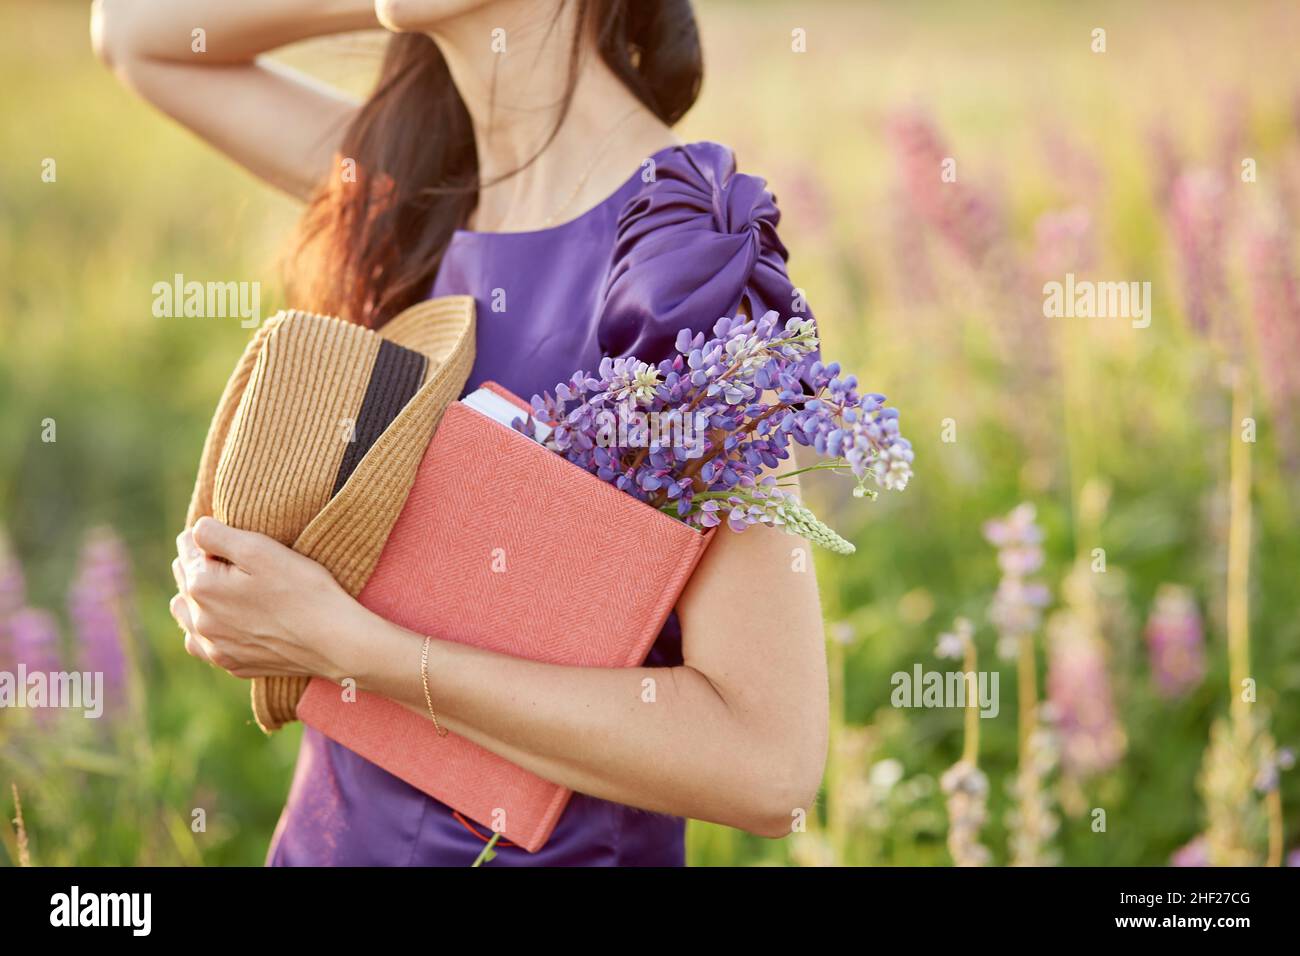 Femme dans le champ d'été avec bouquet de fleurs sauvages - lupins, chapeau et carnet rose.Proximité de la nature, concept d'auto-découverte.Concept détente et bien-être.Journée ensoleillée, concept bonne humeur. Banque D'Images